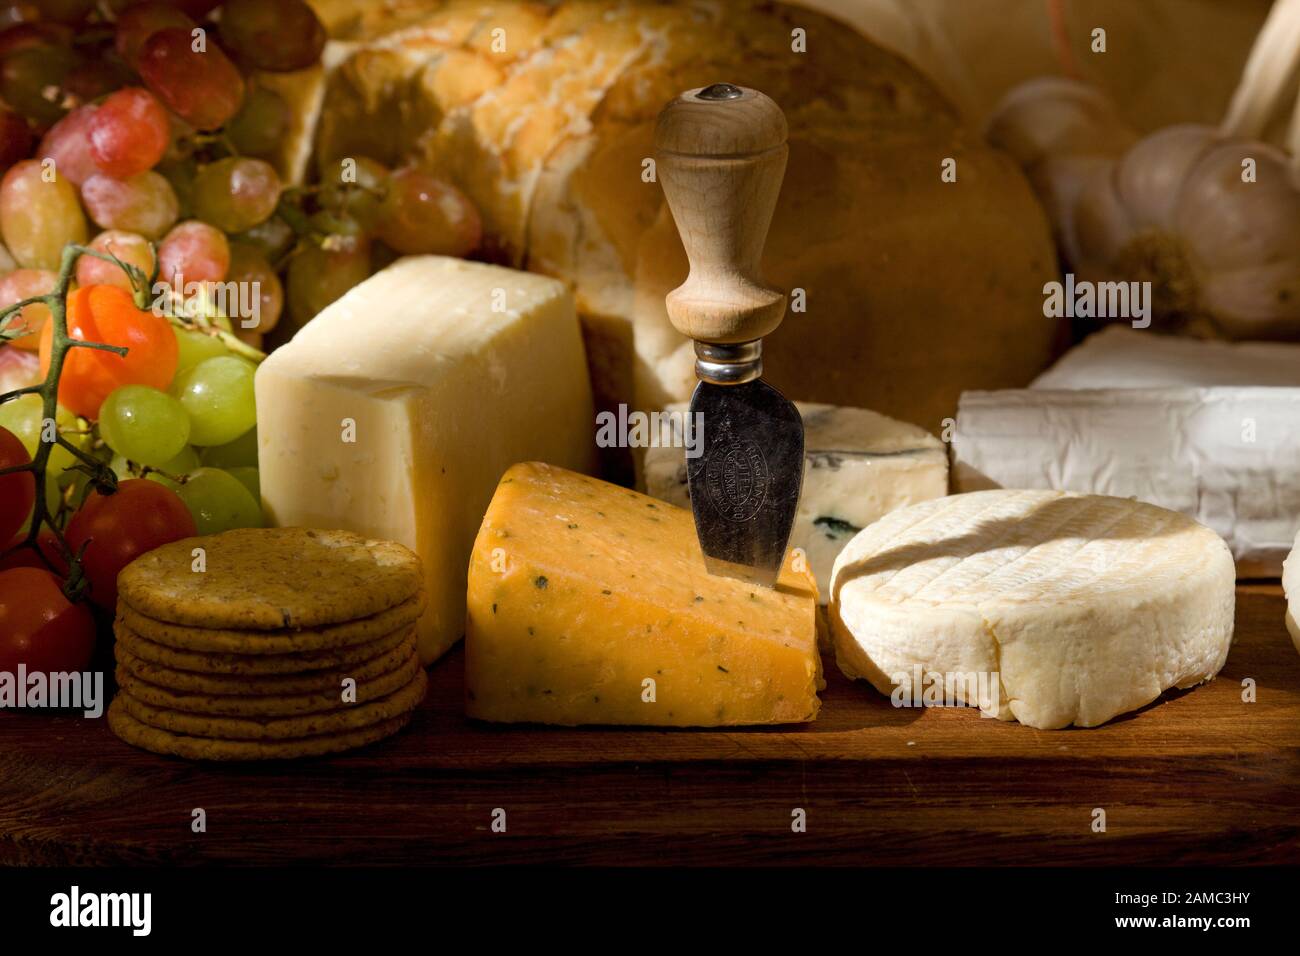 Plateau de fromages avec une sélection de fromages anglais et français Banque D'Images